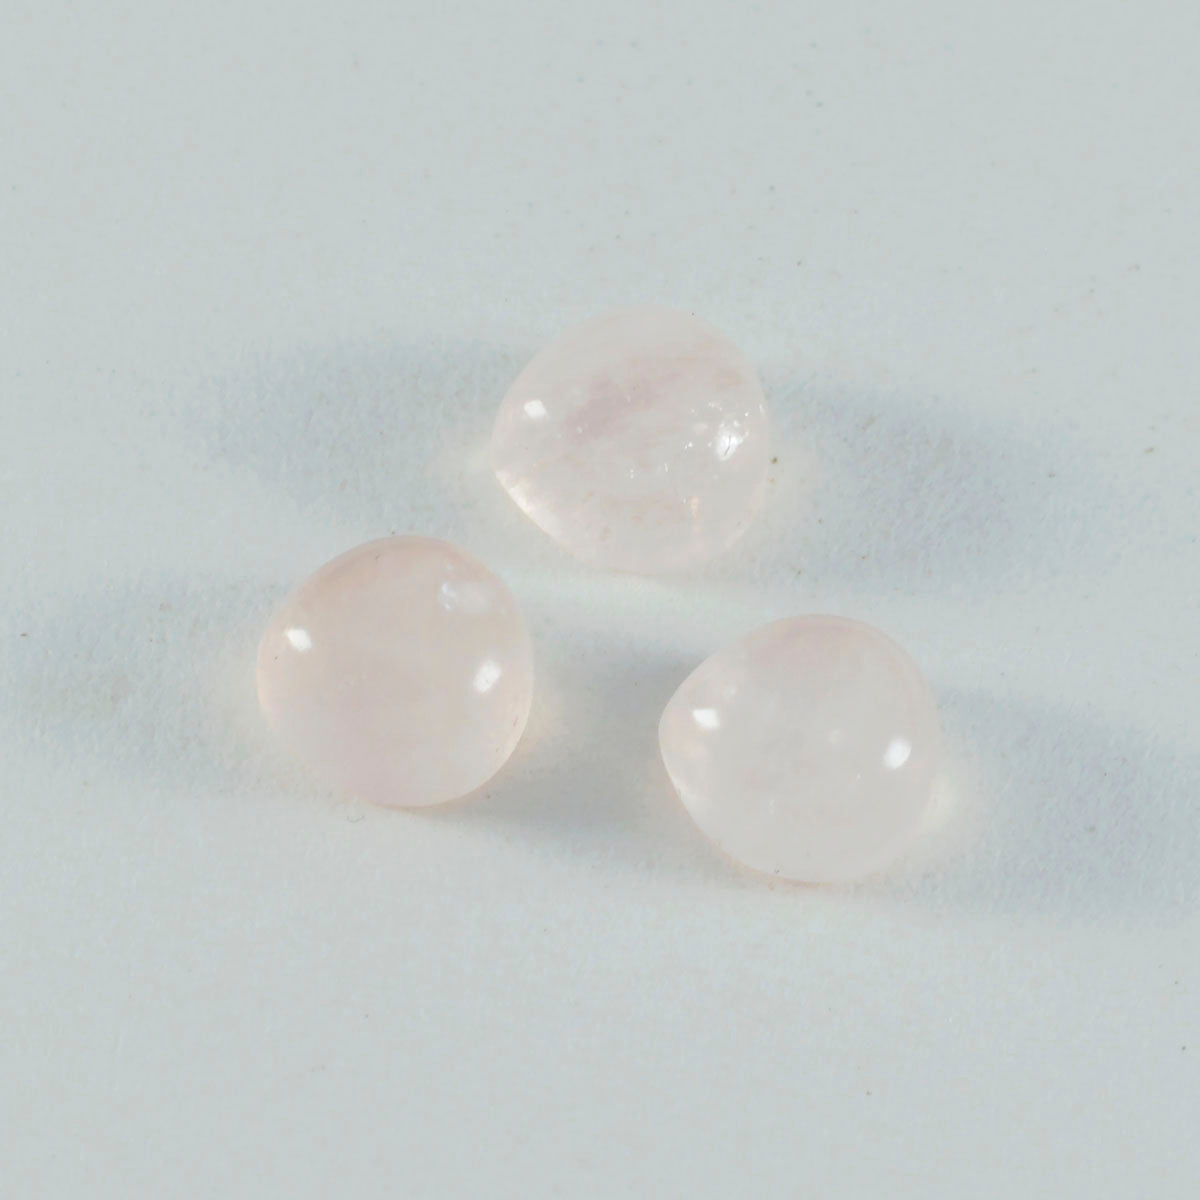 riyogems 1 шт. кабошон из розового кварца 14x14 мм в форме сердца A + 1 качественный свободный драгоценный камень